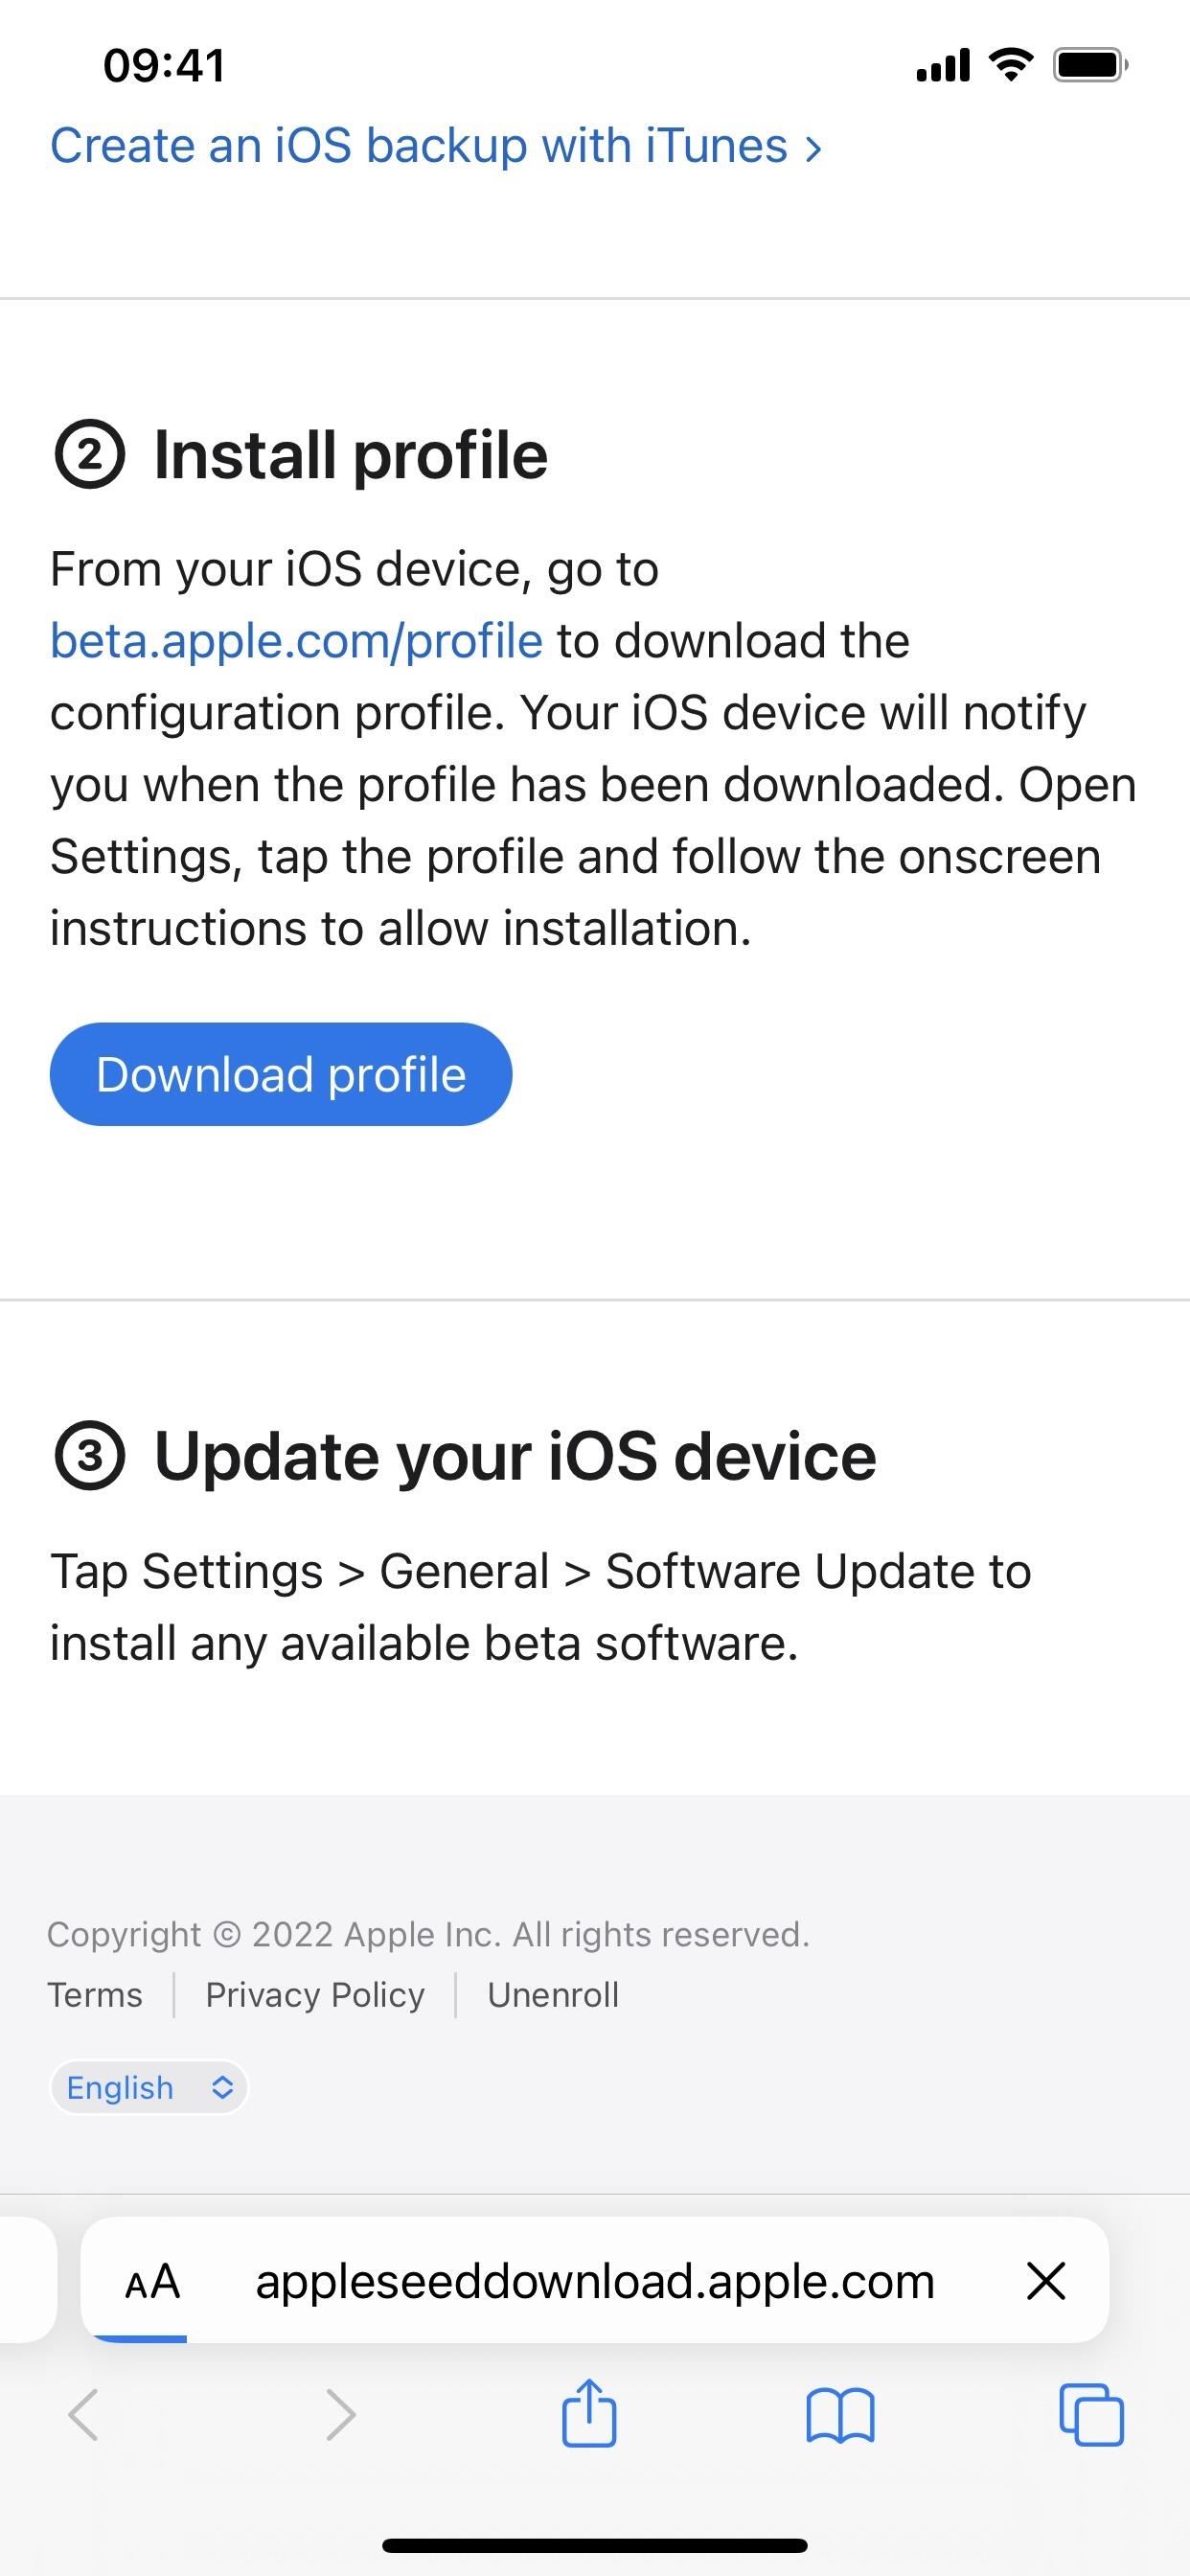 So laden Sie iOS 16.4 herunter und installieren es auf Ihrem iPhone, um neue Funktionen zuerst auszuprobieren